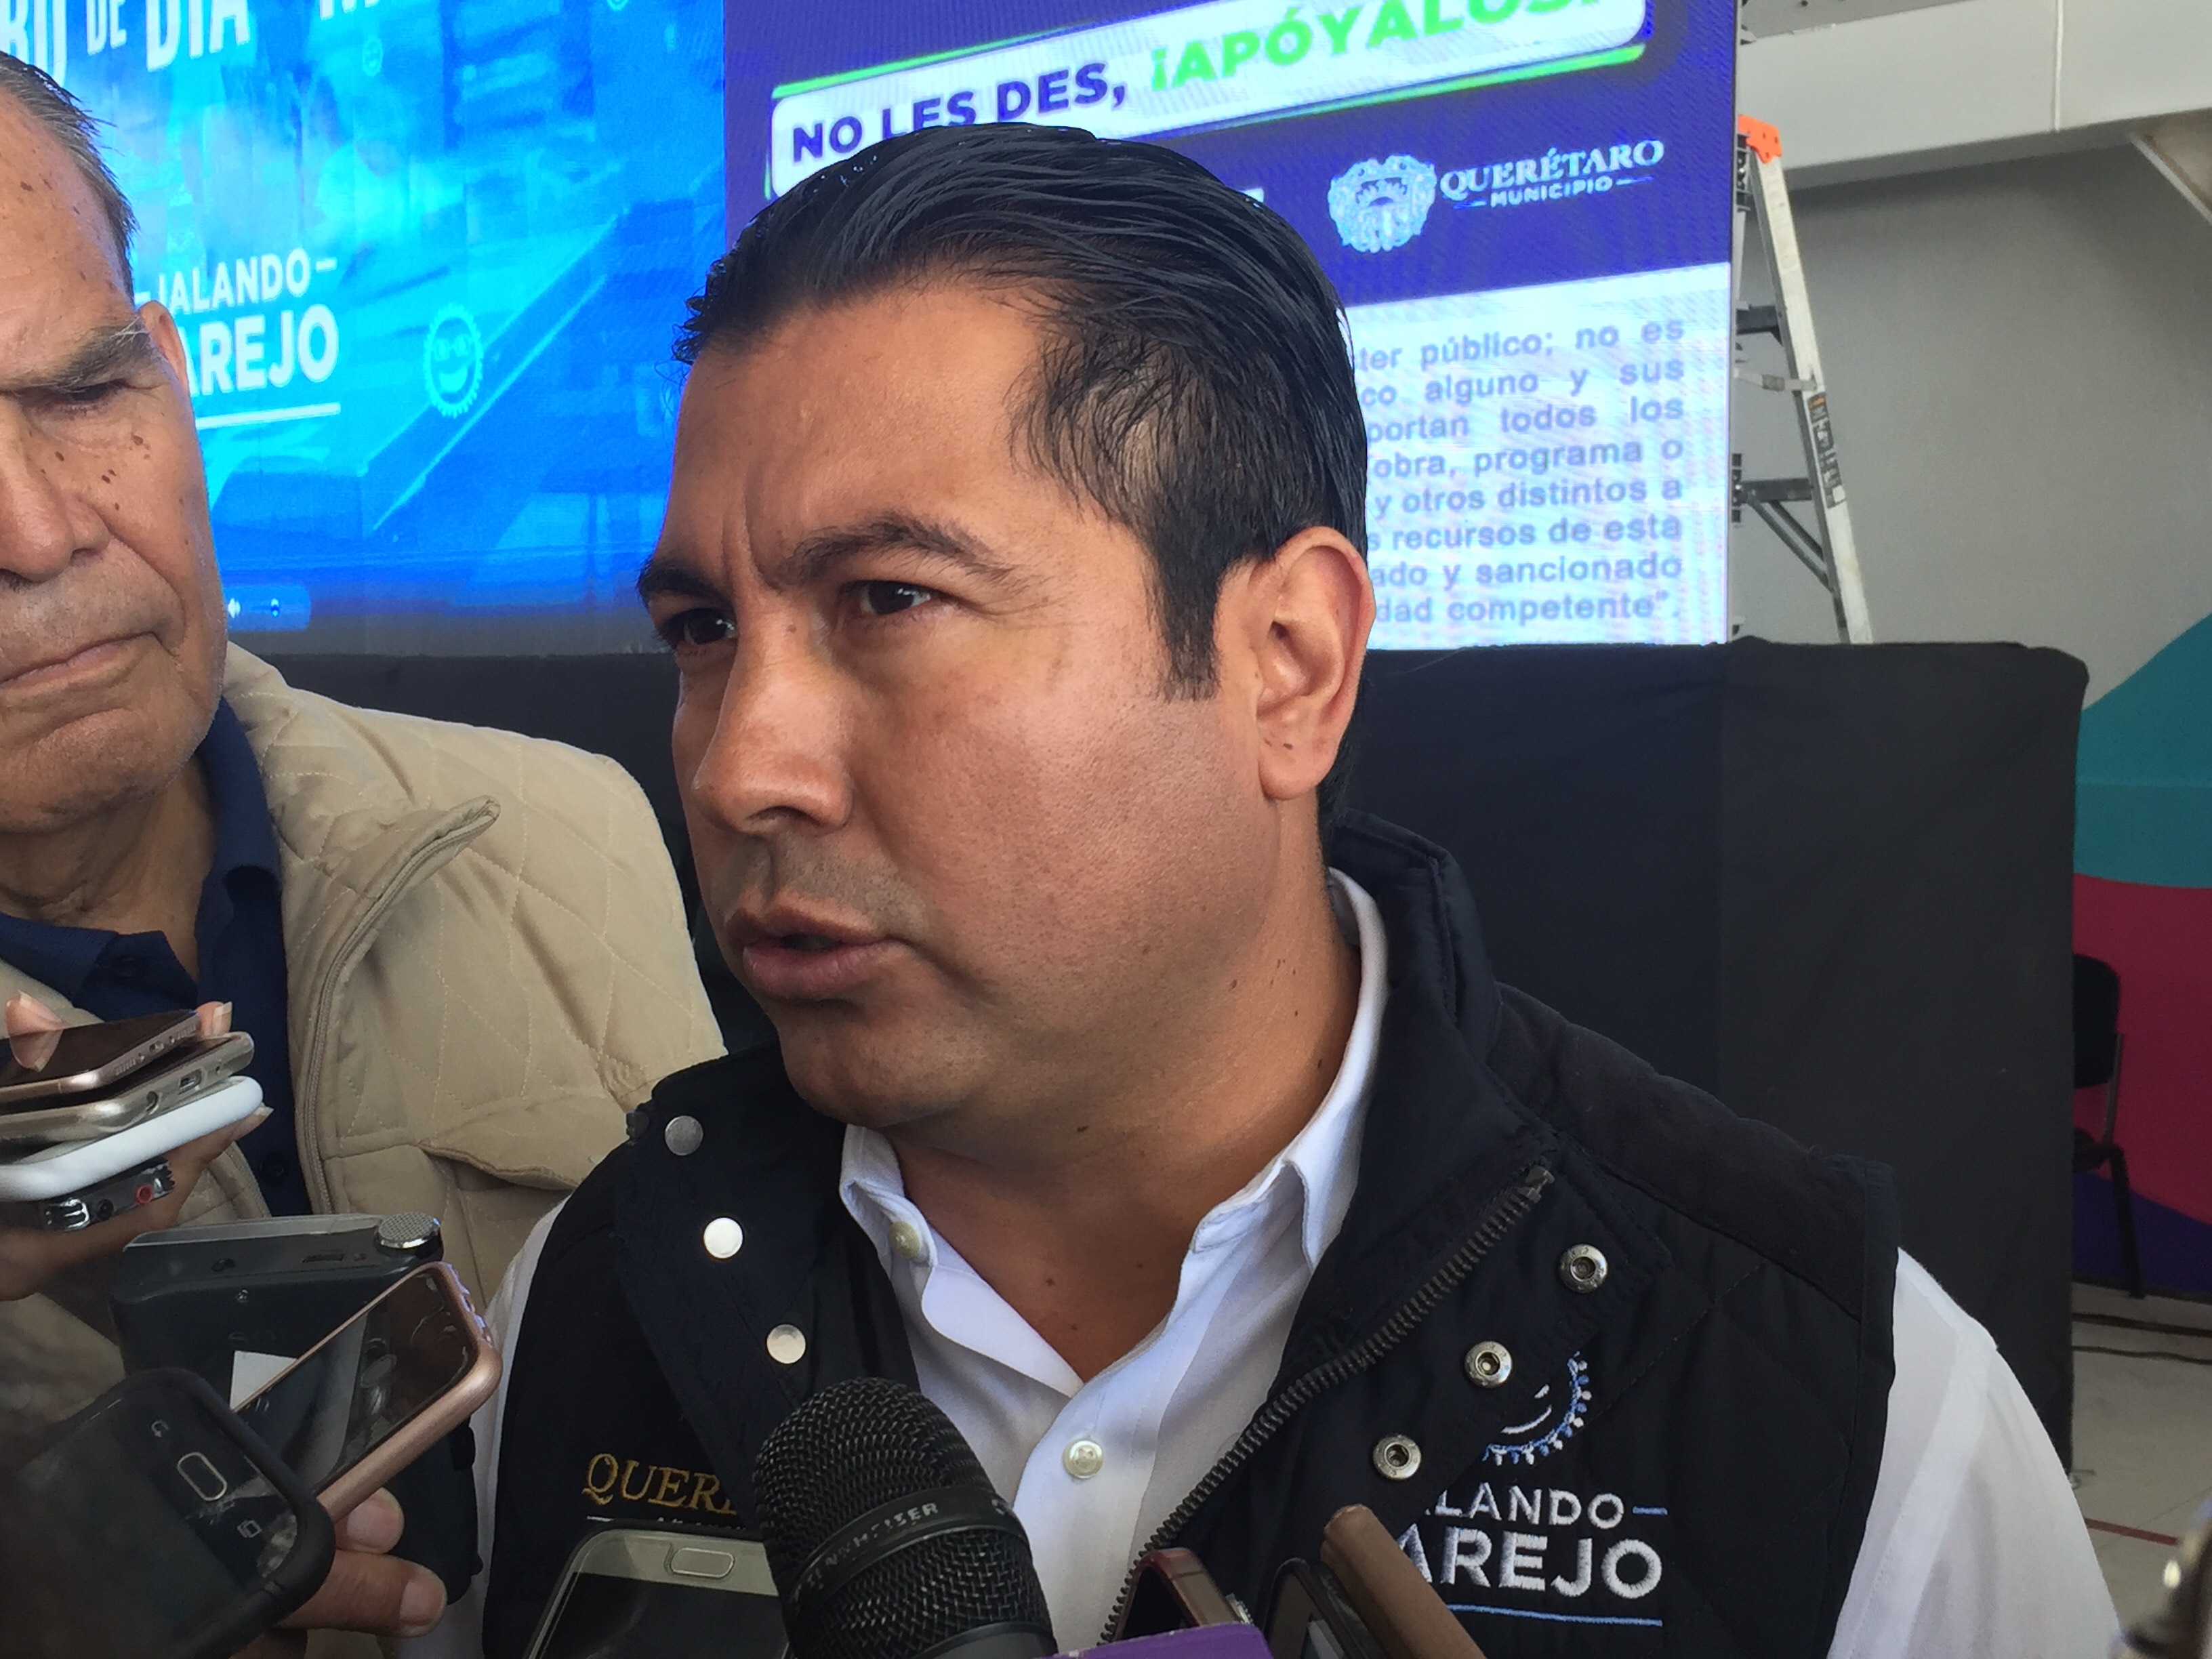  Clausura en Uptown Juriquilla fue por incumplir el reglamento de Protección Civil: Velázquez Pegueros